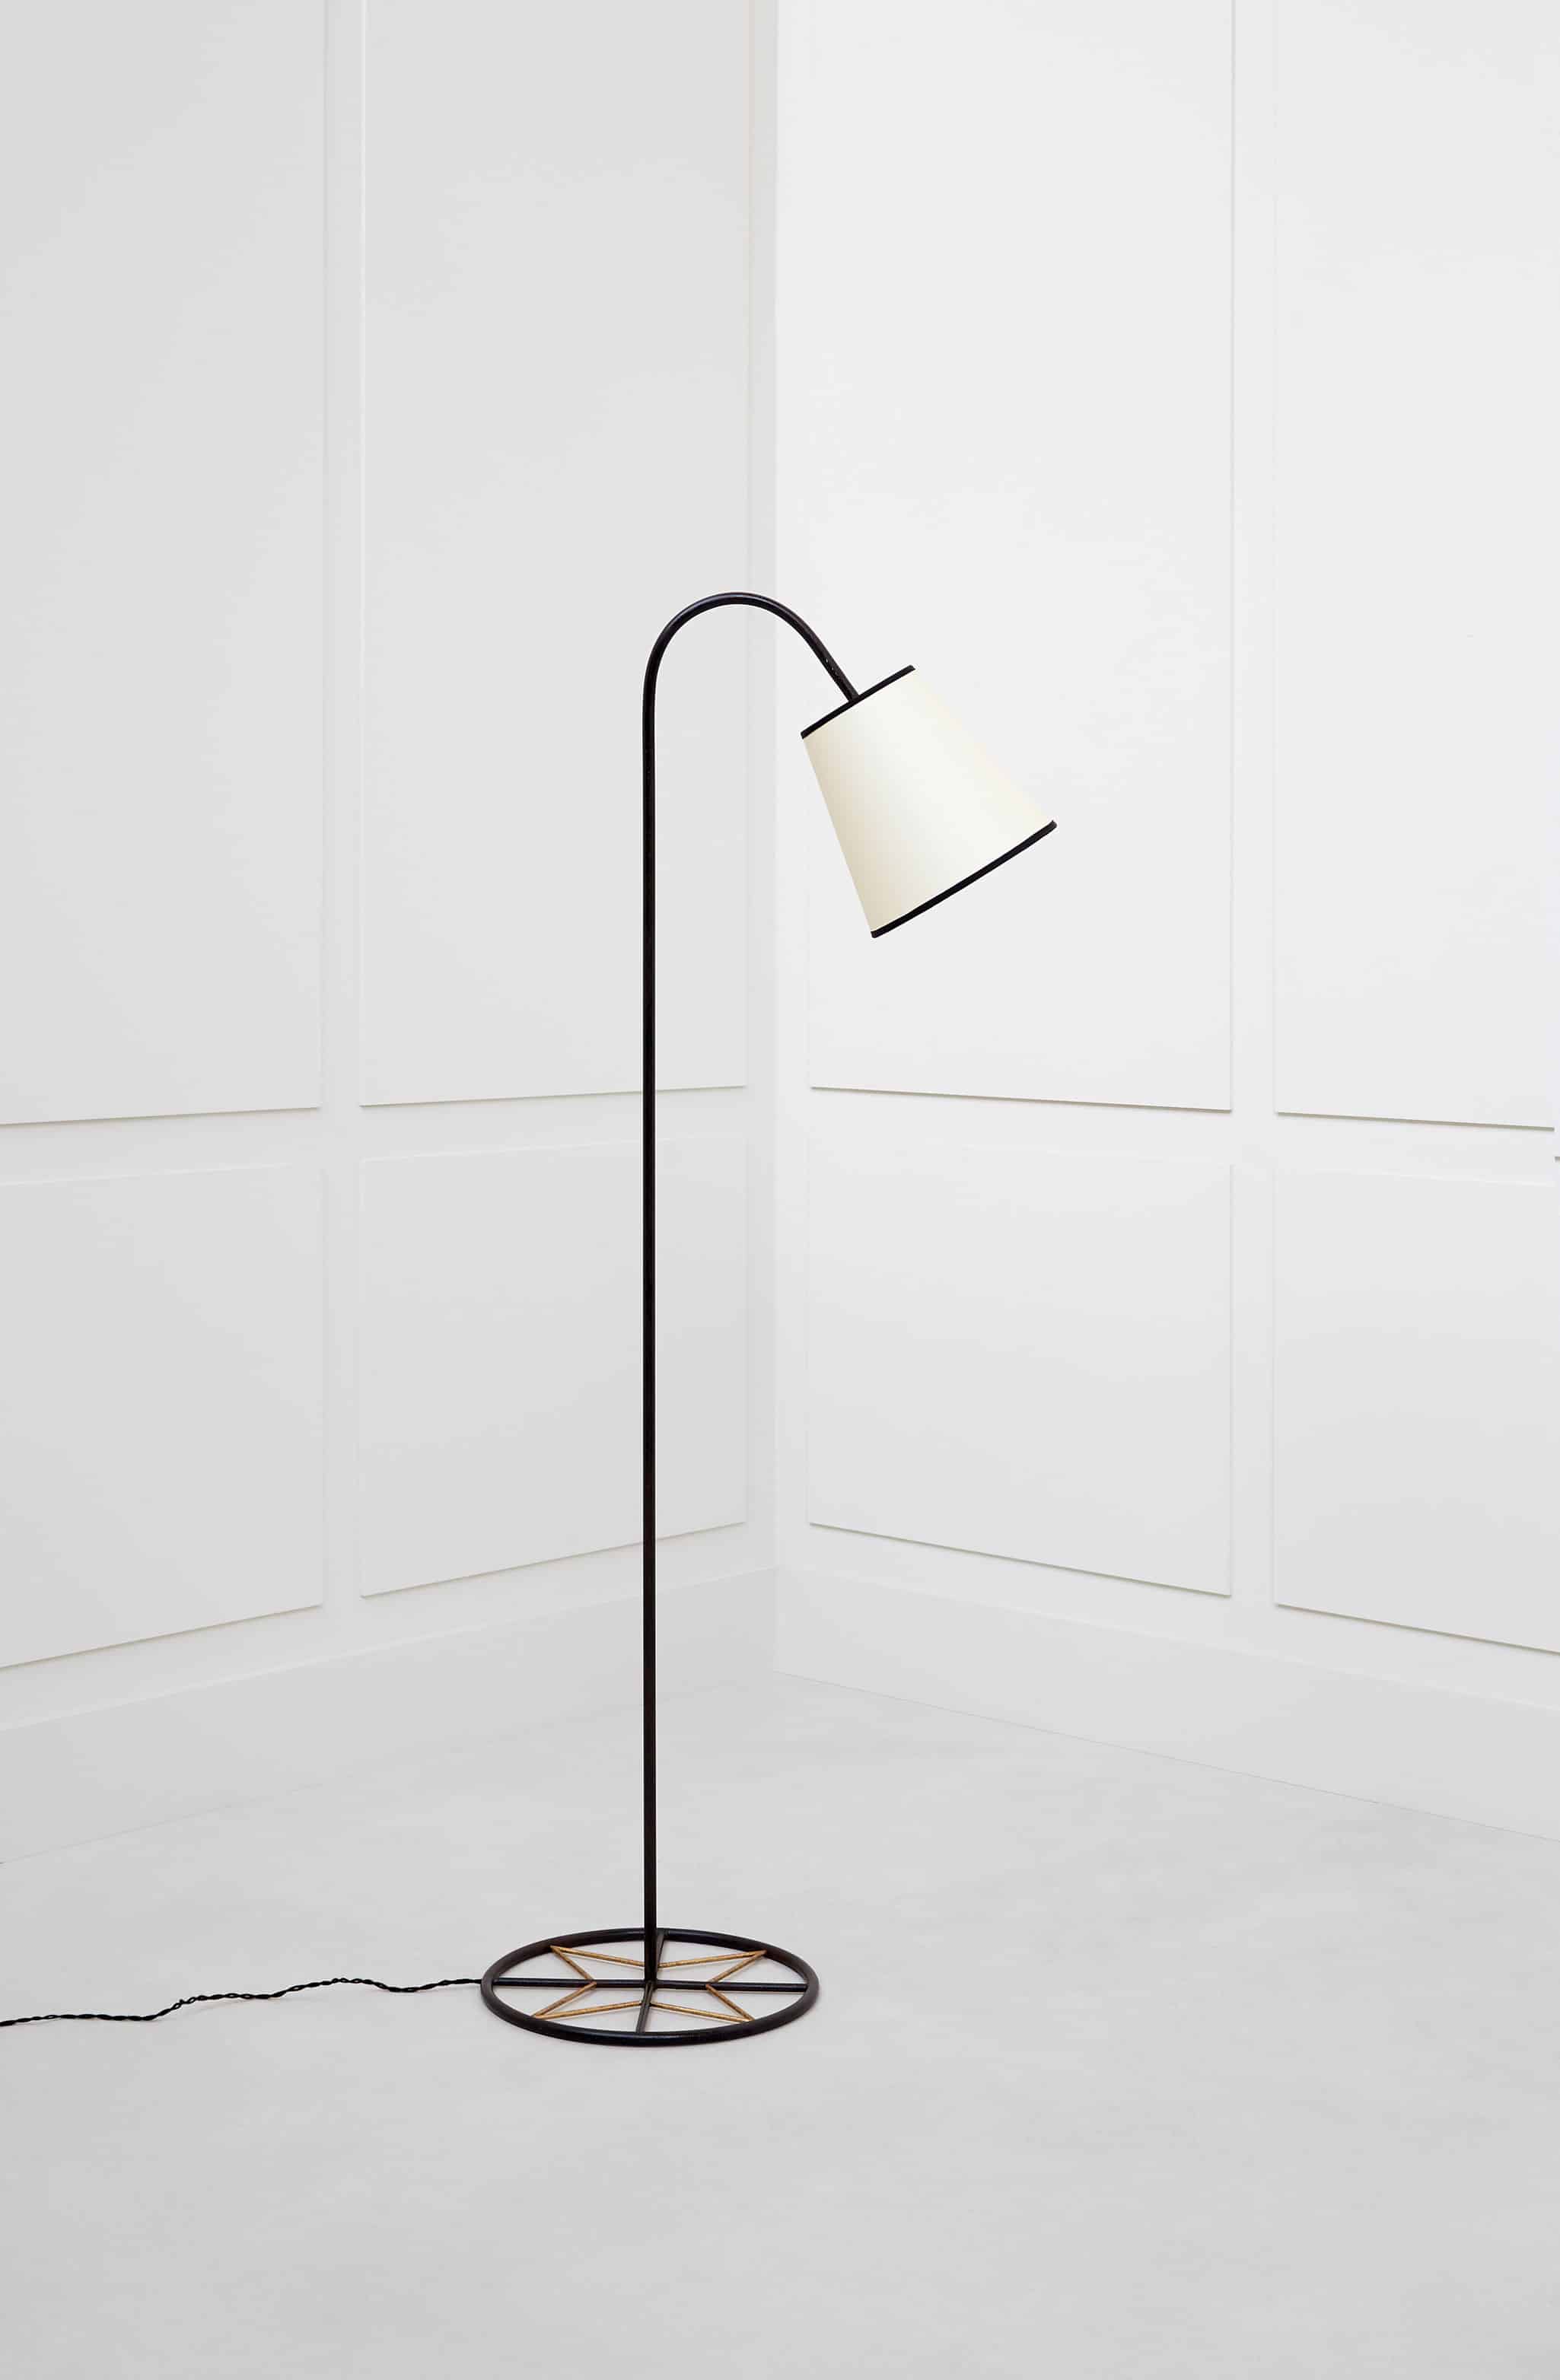 Jean Royère, “Ski” floor lamp, vue 01